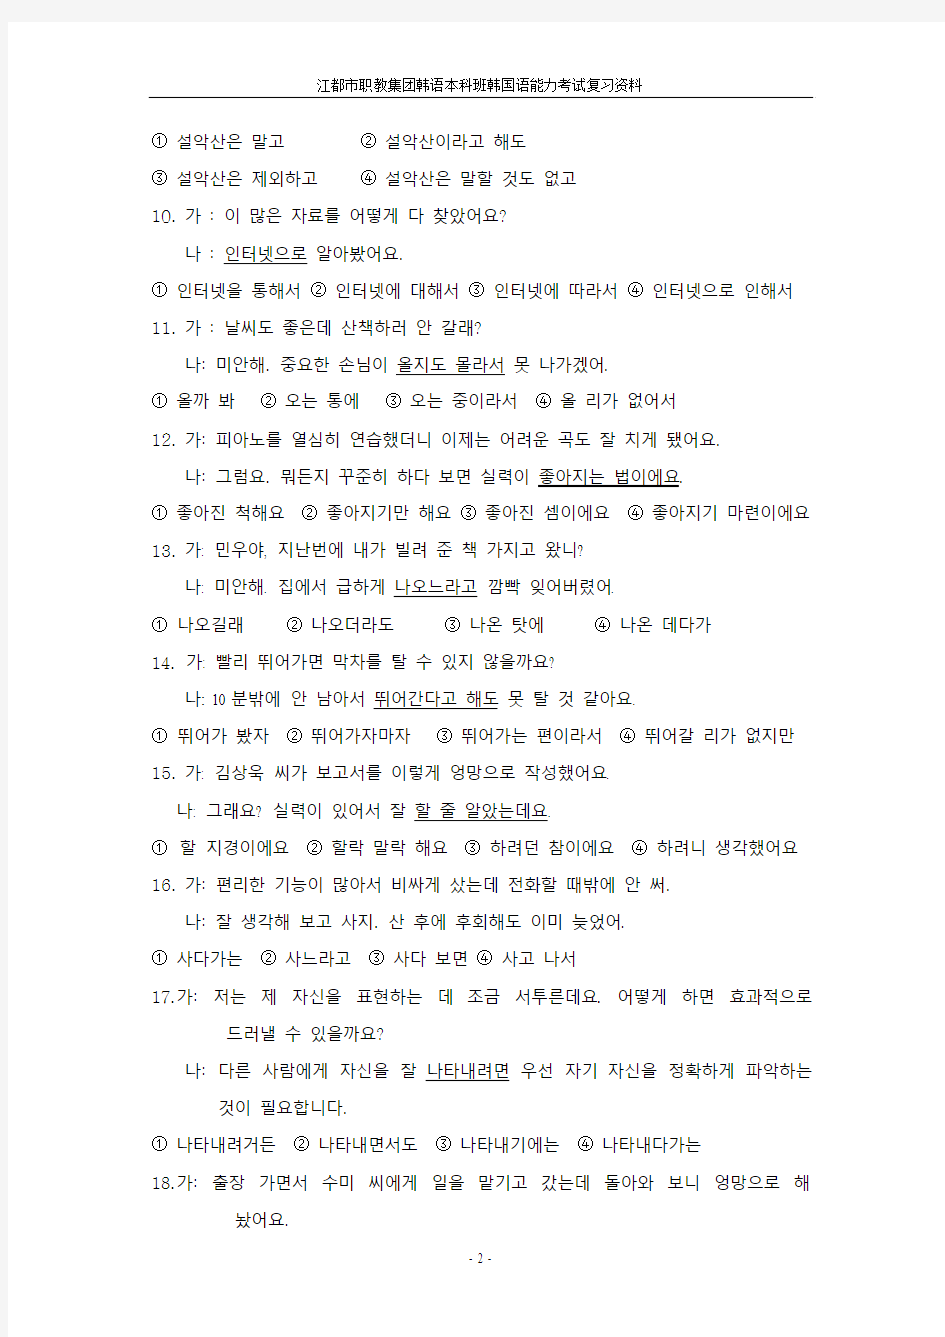 韩国语能力考试中级语法24-26题真题整理 庄鸿寅